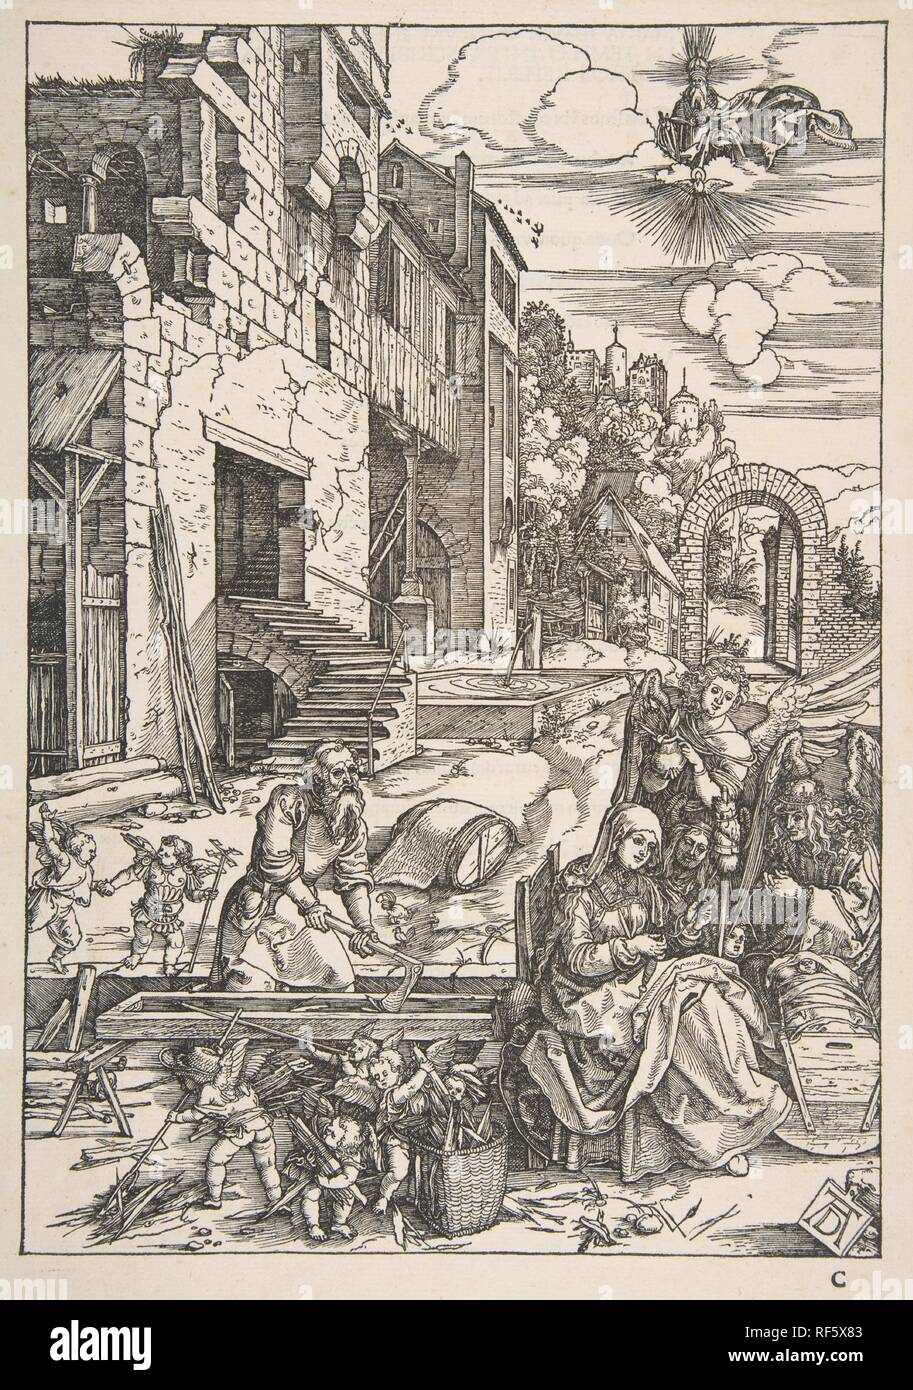 Le séjour de la Sainte Famille en Egypte, à partir de la vie de la Vierge, de l'édition, 1511. Artiste : Albrecht Dürer (Nuremberg, Allemagne Nuremberg 1471-1528). Fiche technique : Dimensions : 16 1/2 x 11 3/4 in. (41,9 x 29,8 cm) bloc : 11 3/4 x 8 1/4 in. (29,8 x 21 cm). Date : 1511. Musée : Metropolitan Museum of Art, New York, USA. Banque D'Images